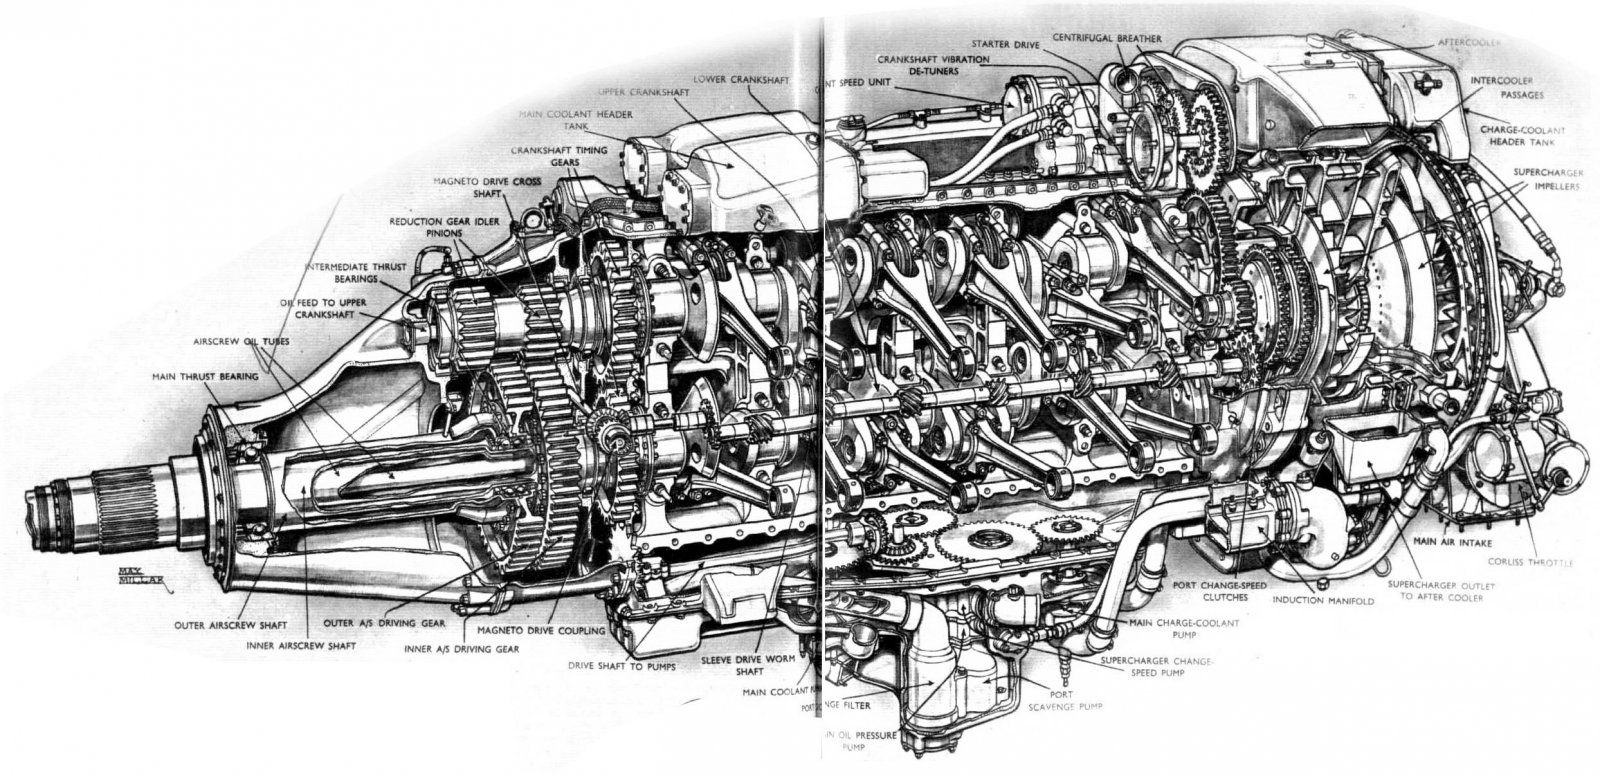 rr-eagle cutaway.jpg